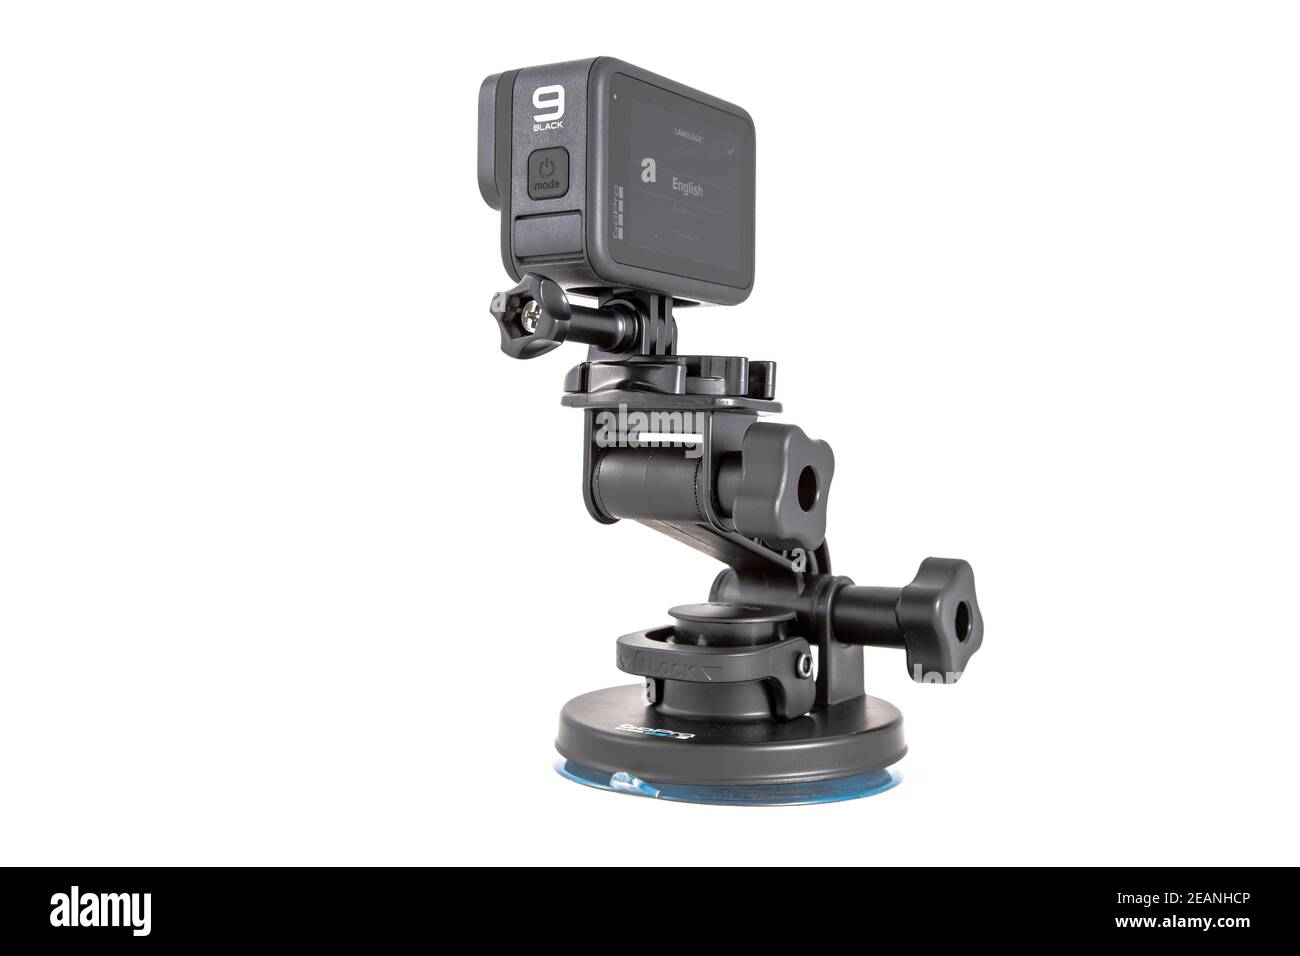 moscou, russie - Novemner 11, 2020: Nouvelle caméra d'action phare gopro HERO 9 noir sur le trépied d'accessoire original. Isolé sur fond blanc. Banque D'Images